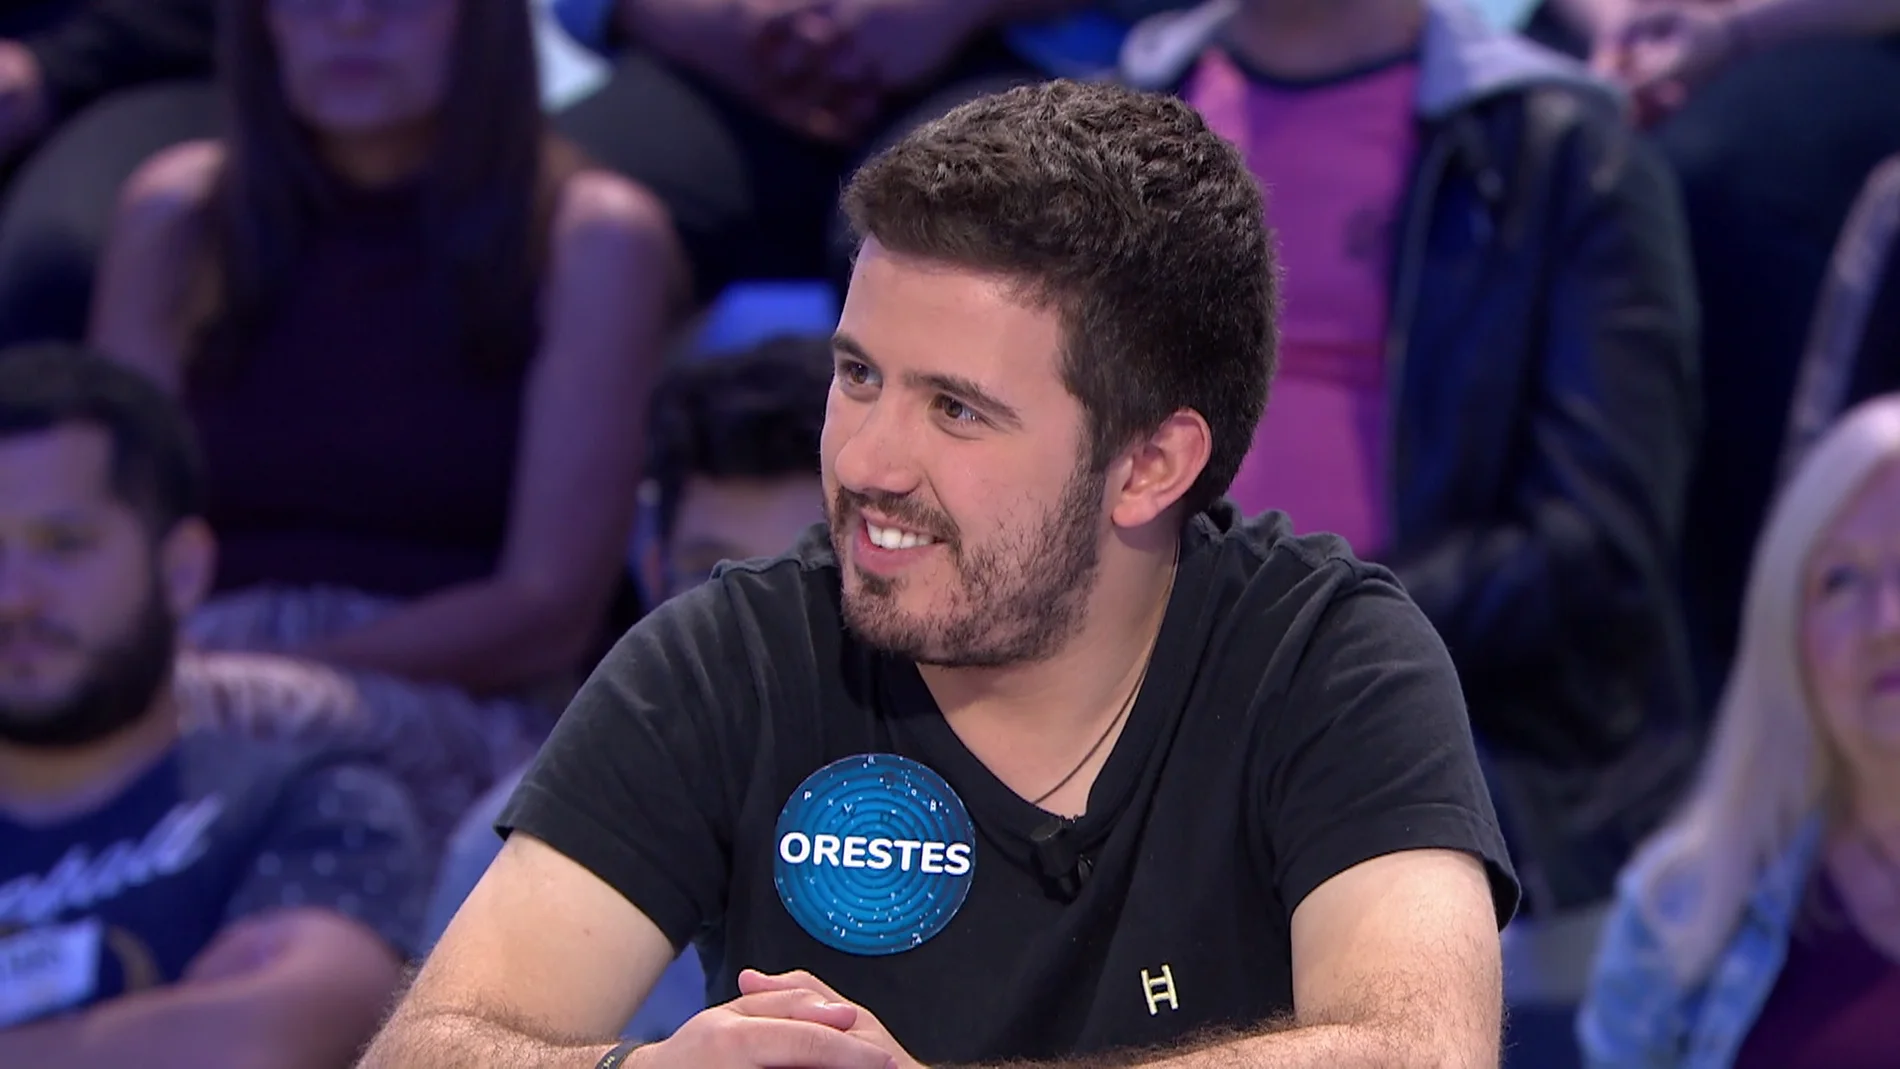 La reacción de David Fernández ante el nuevo chiste de Orestes: ¿le dará su aprobado?